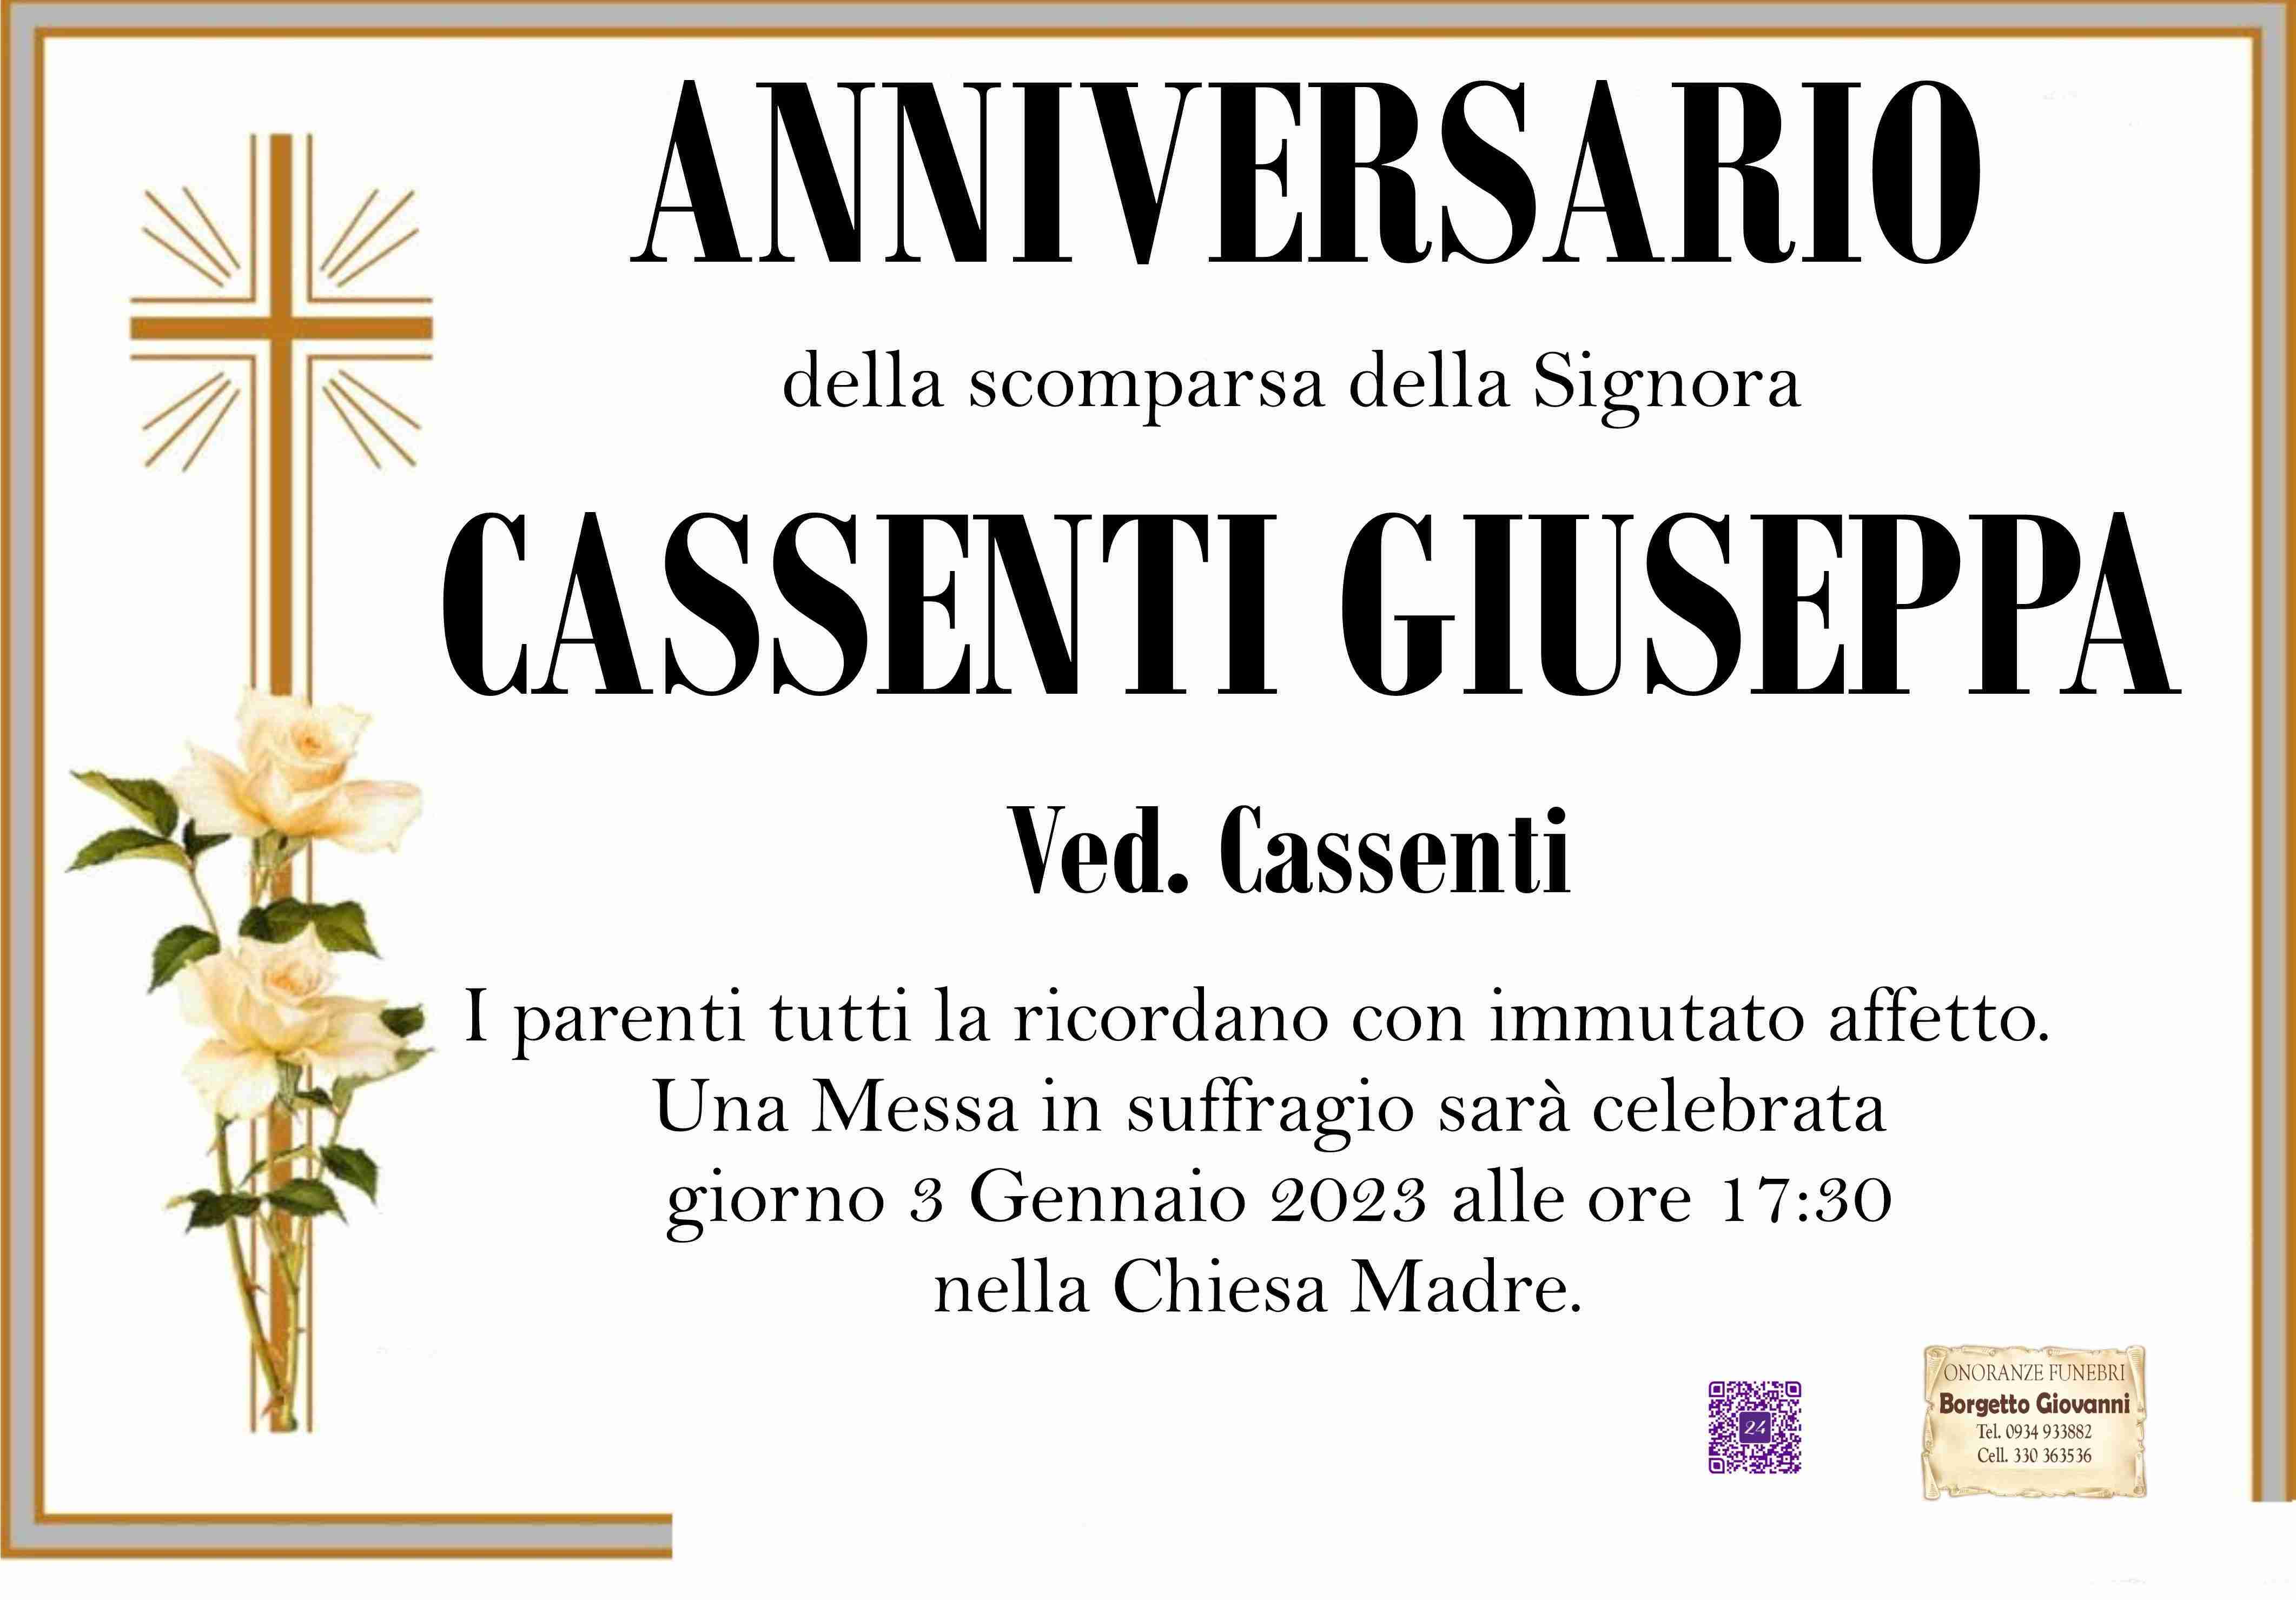 Giuseppa Cassenti